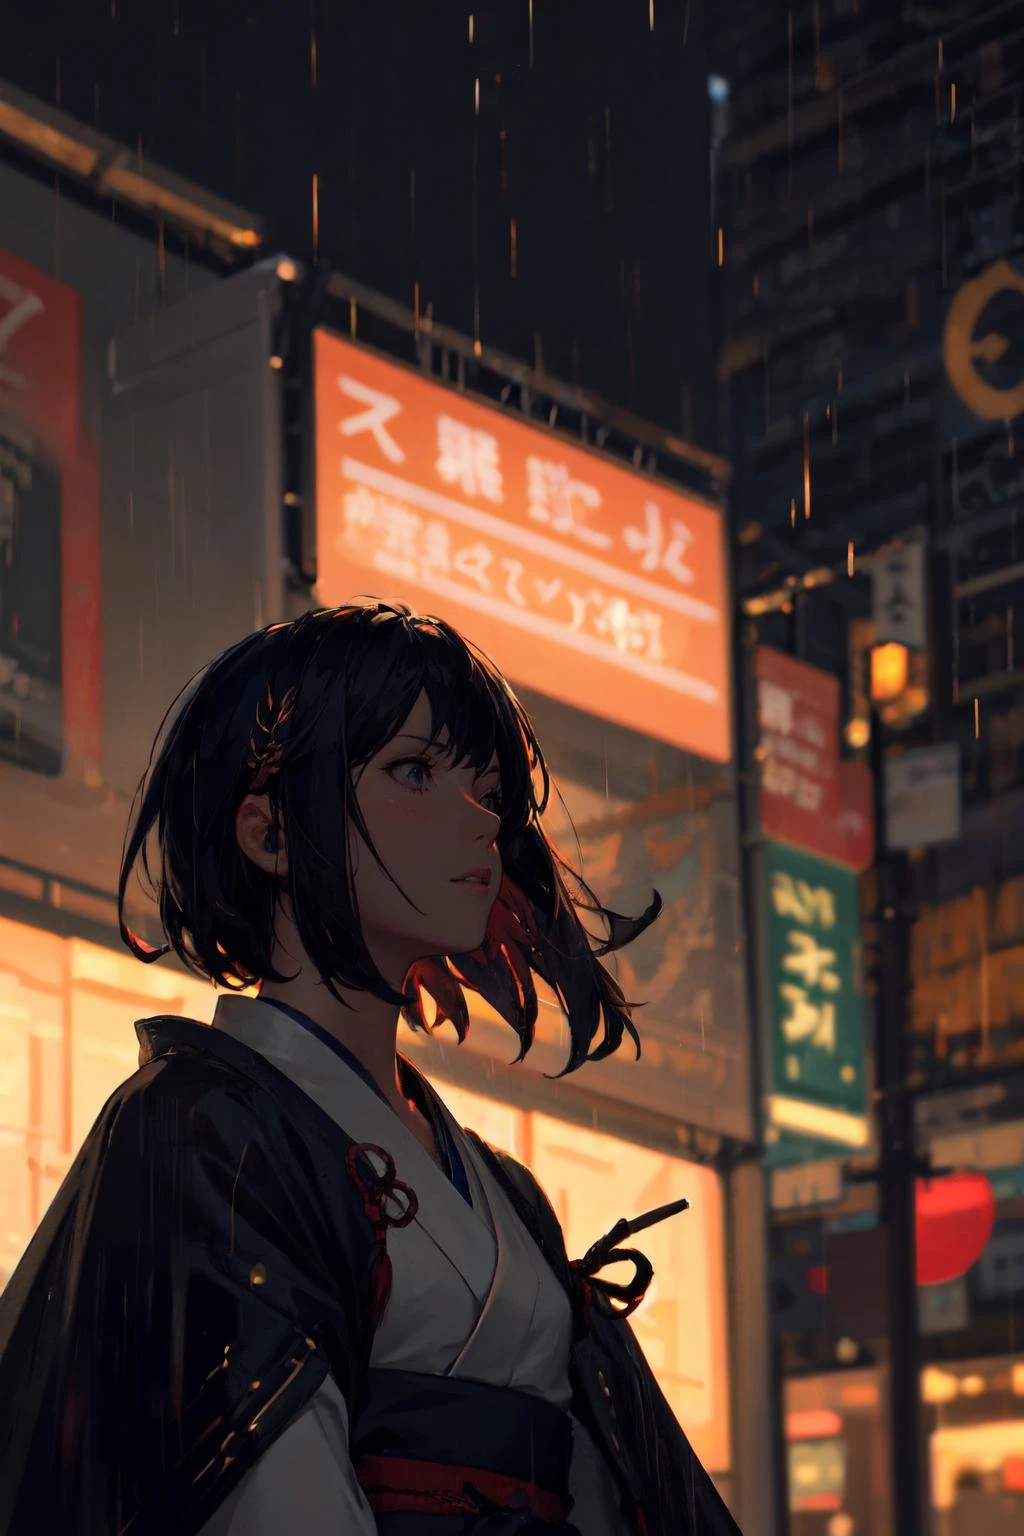 estilo guweiz, 1 garota, Sozinho, samurai, tronco, paisagem urbana, céu noturno, fundo desfocado, profundidade de campo, bokeh, Iluminação de cinema, tema escuro, chovendo, Grão de filme, rtx